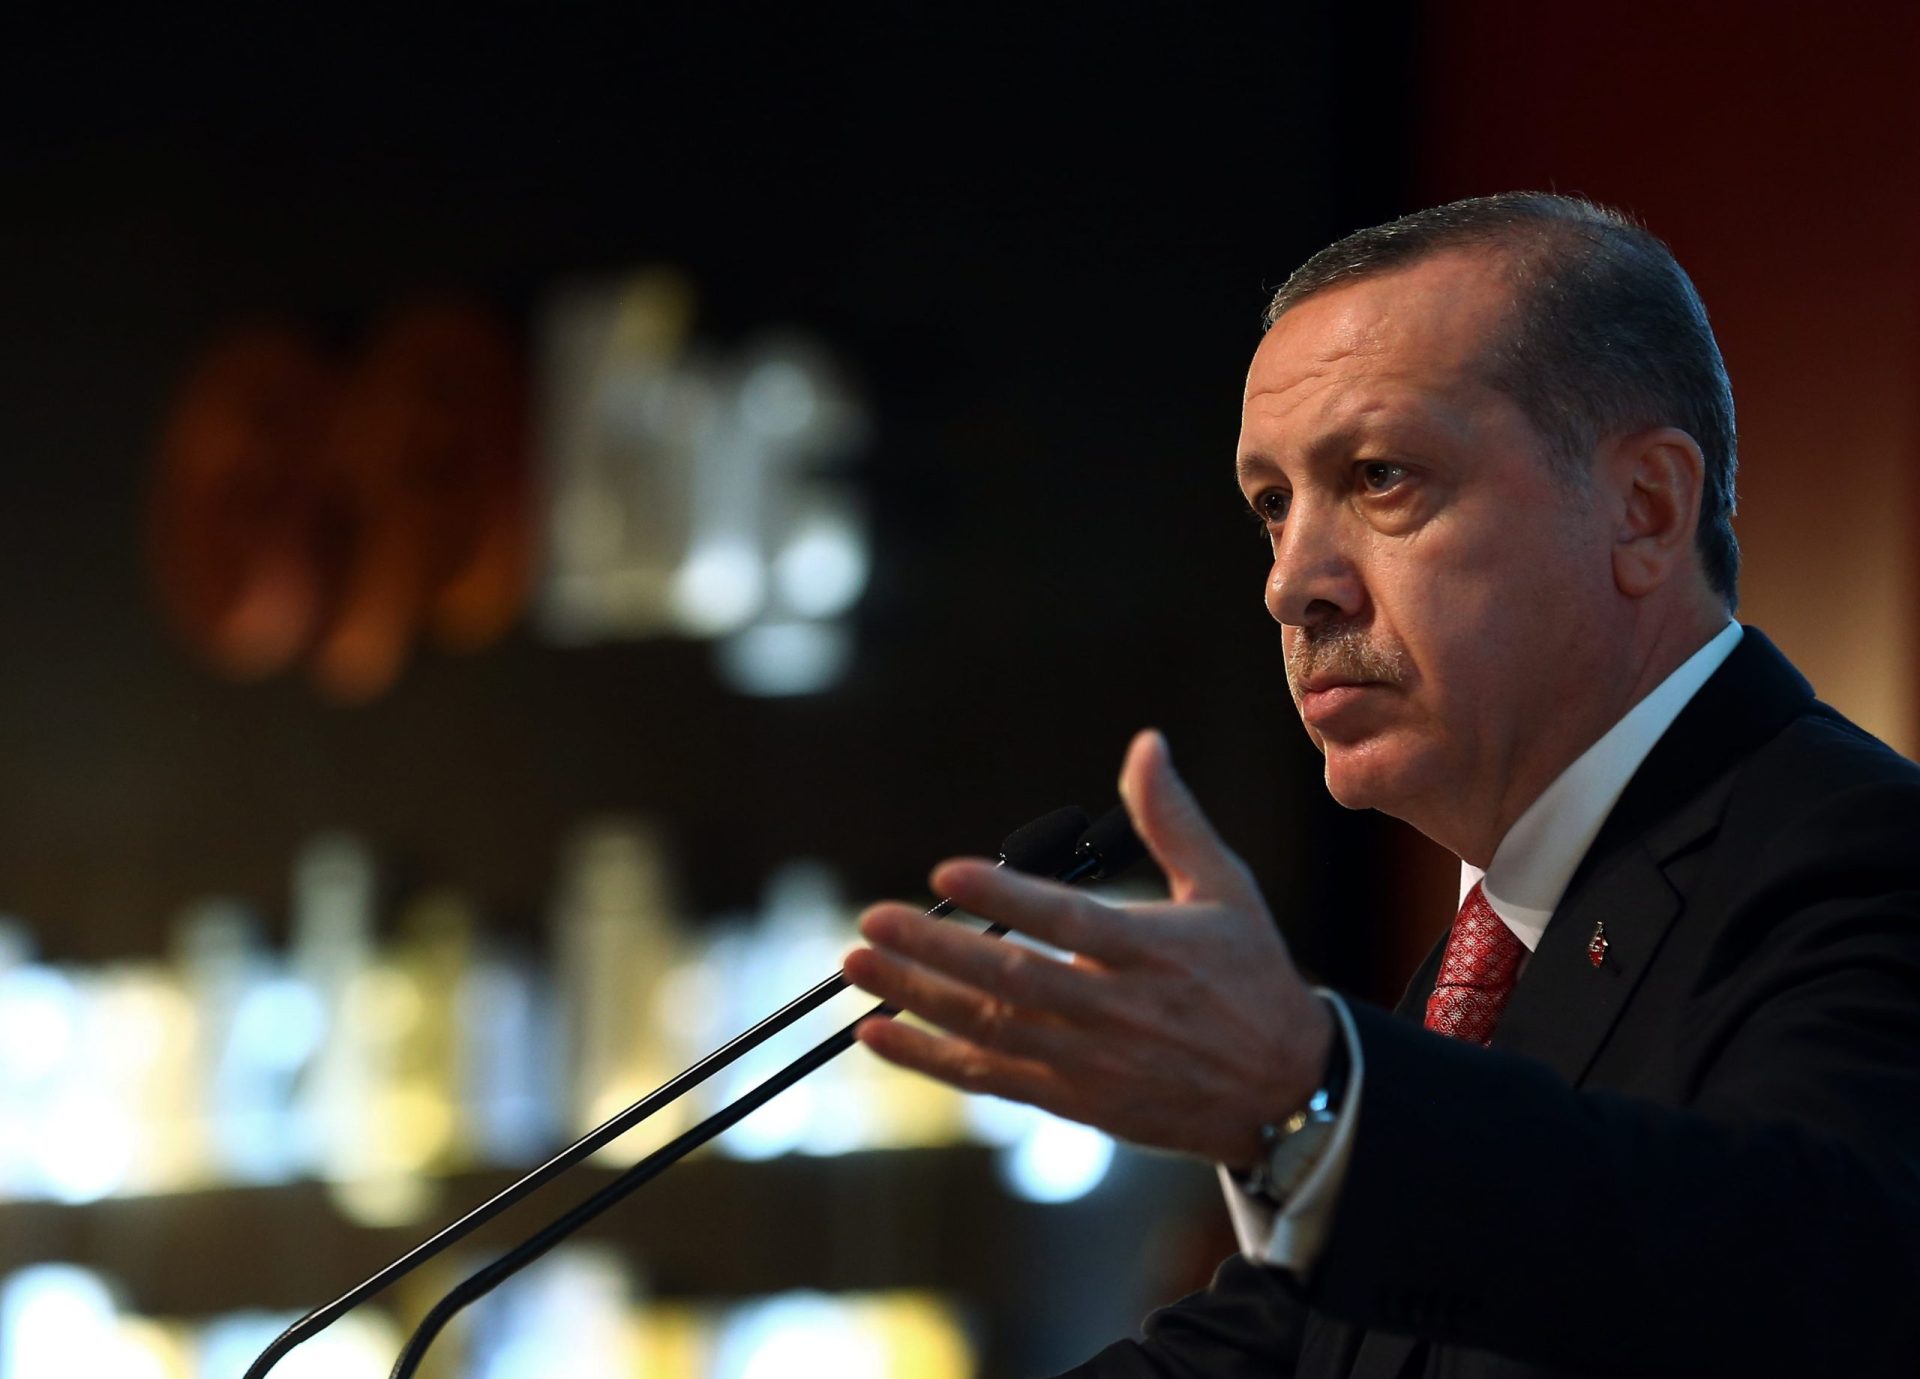 Adolescente turco preso por caluniar Erdogan